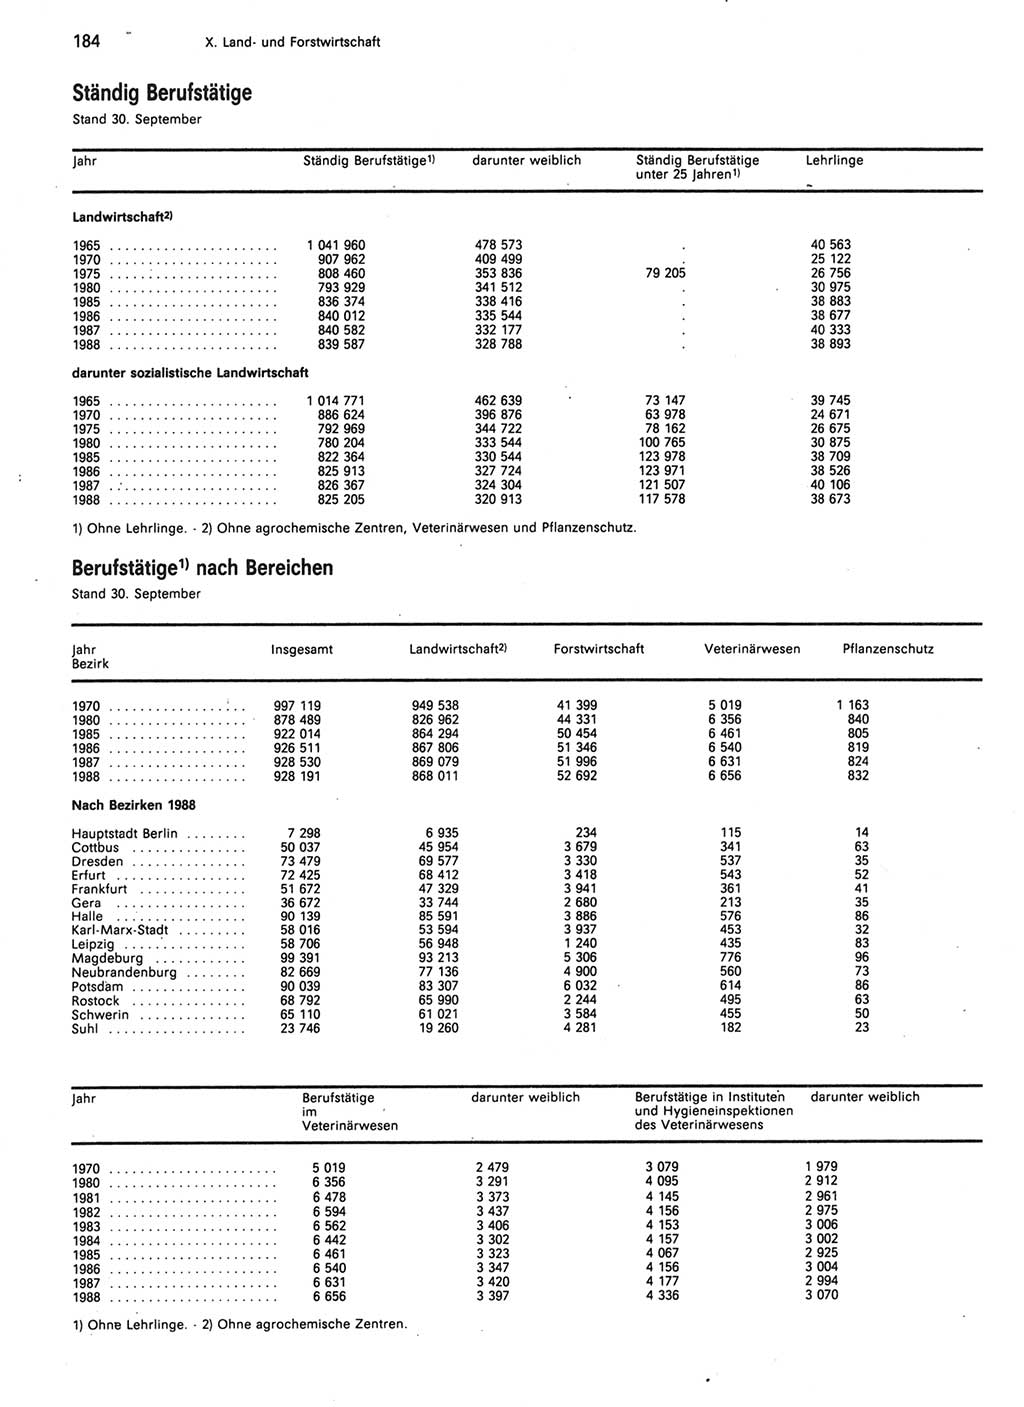 Statistisches Jahrbuch der Deutschen Demokratischen Republik (DDR) 1989, Seite 184 (Stat. Jb. DDR 1989, S. 184)